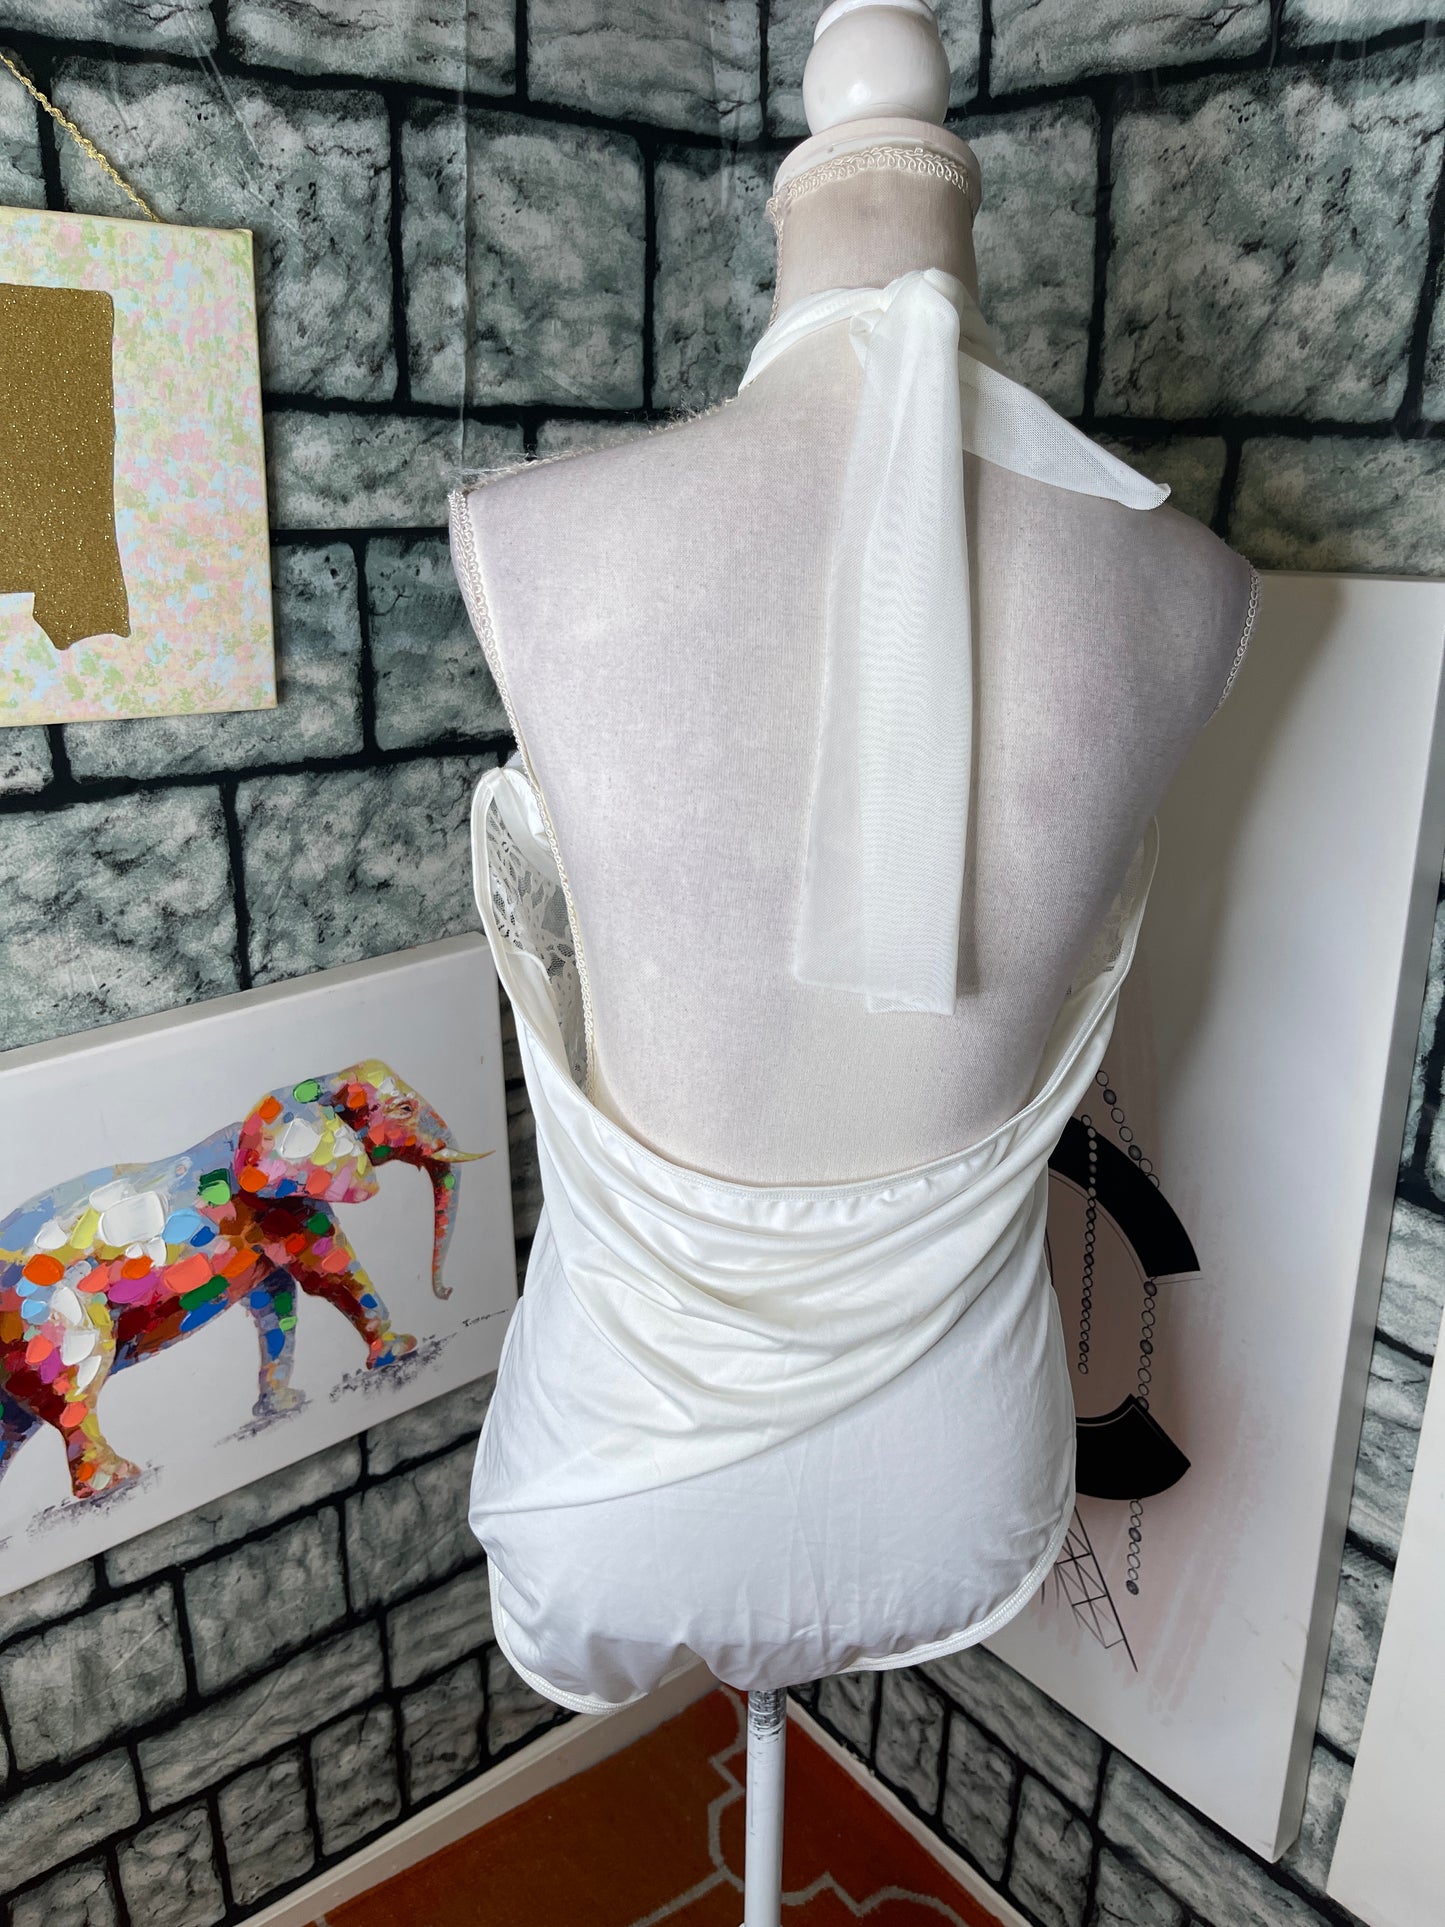 NEW Shein White Lace Bodysuit Blouse Women sz 4Xl